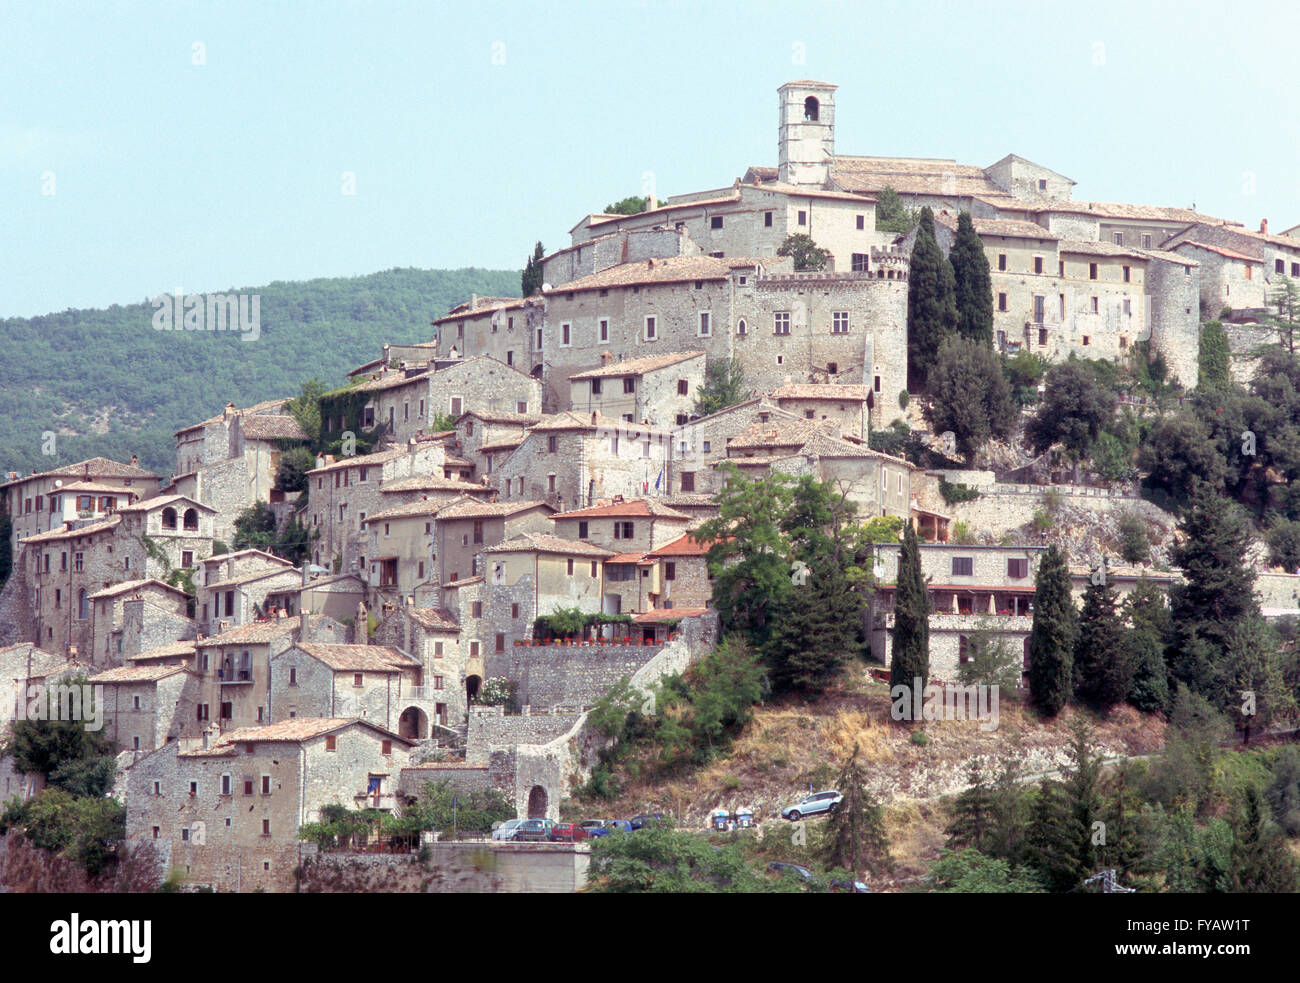 Panorama of Labro, in the Italian province of Rieti (Lazio Stock Photo ...